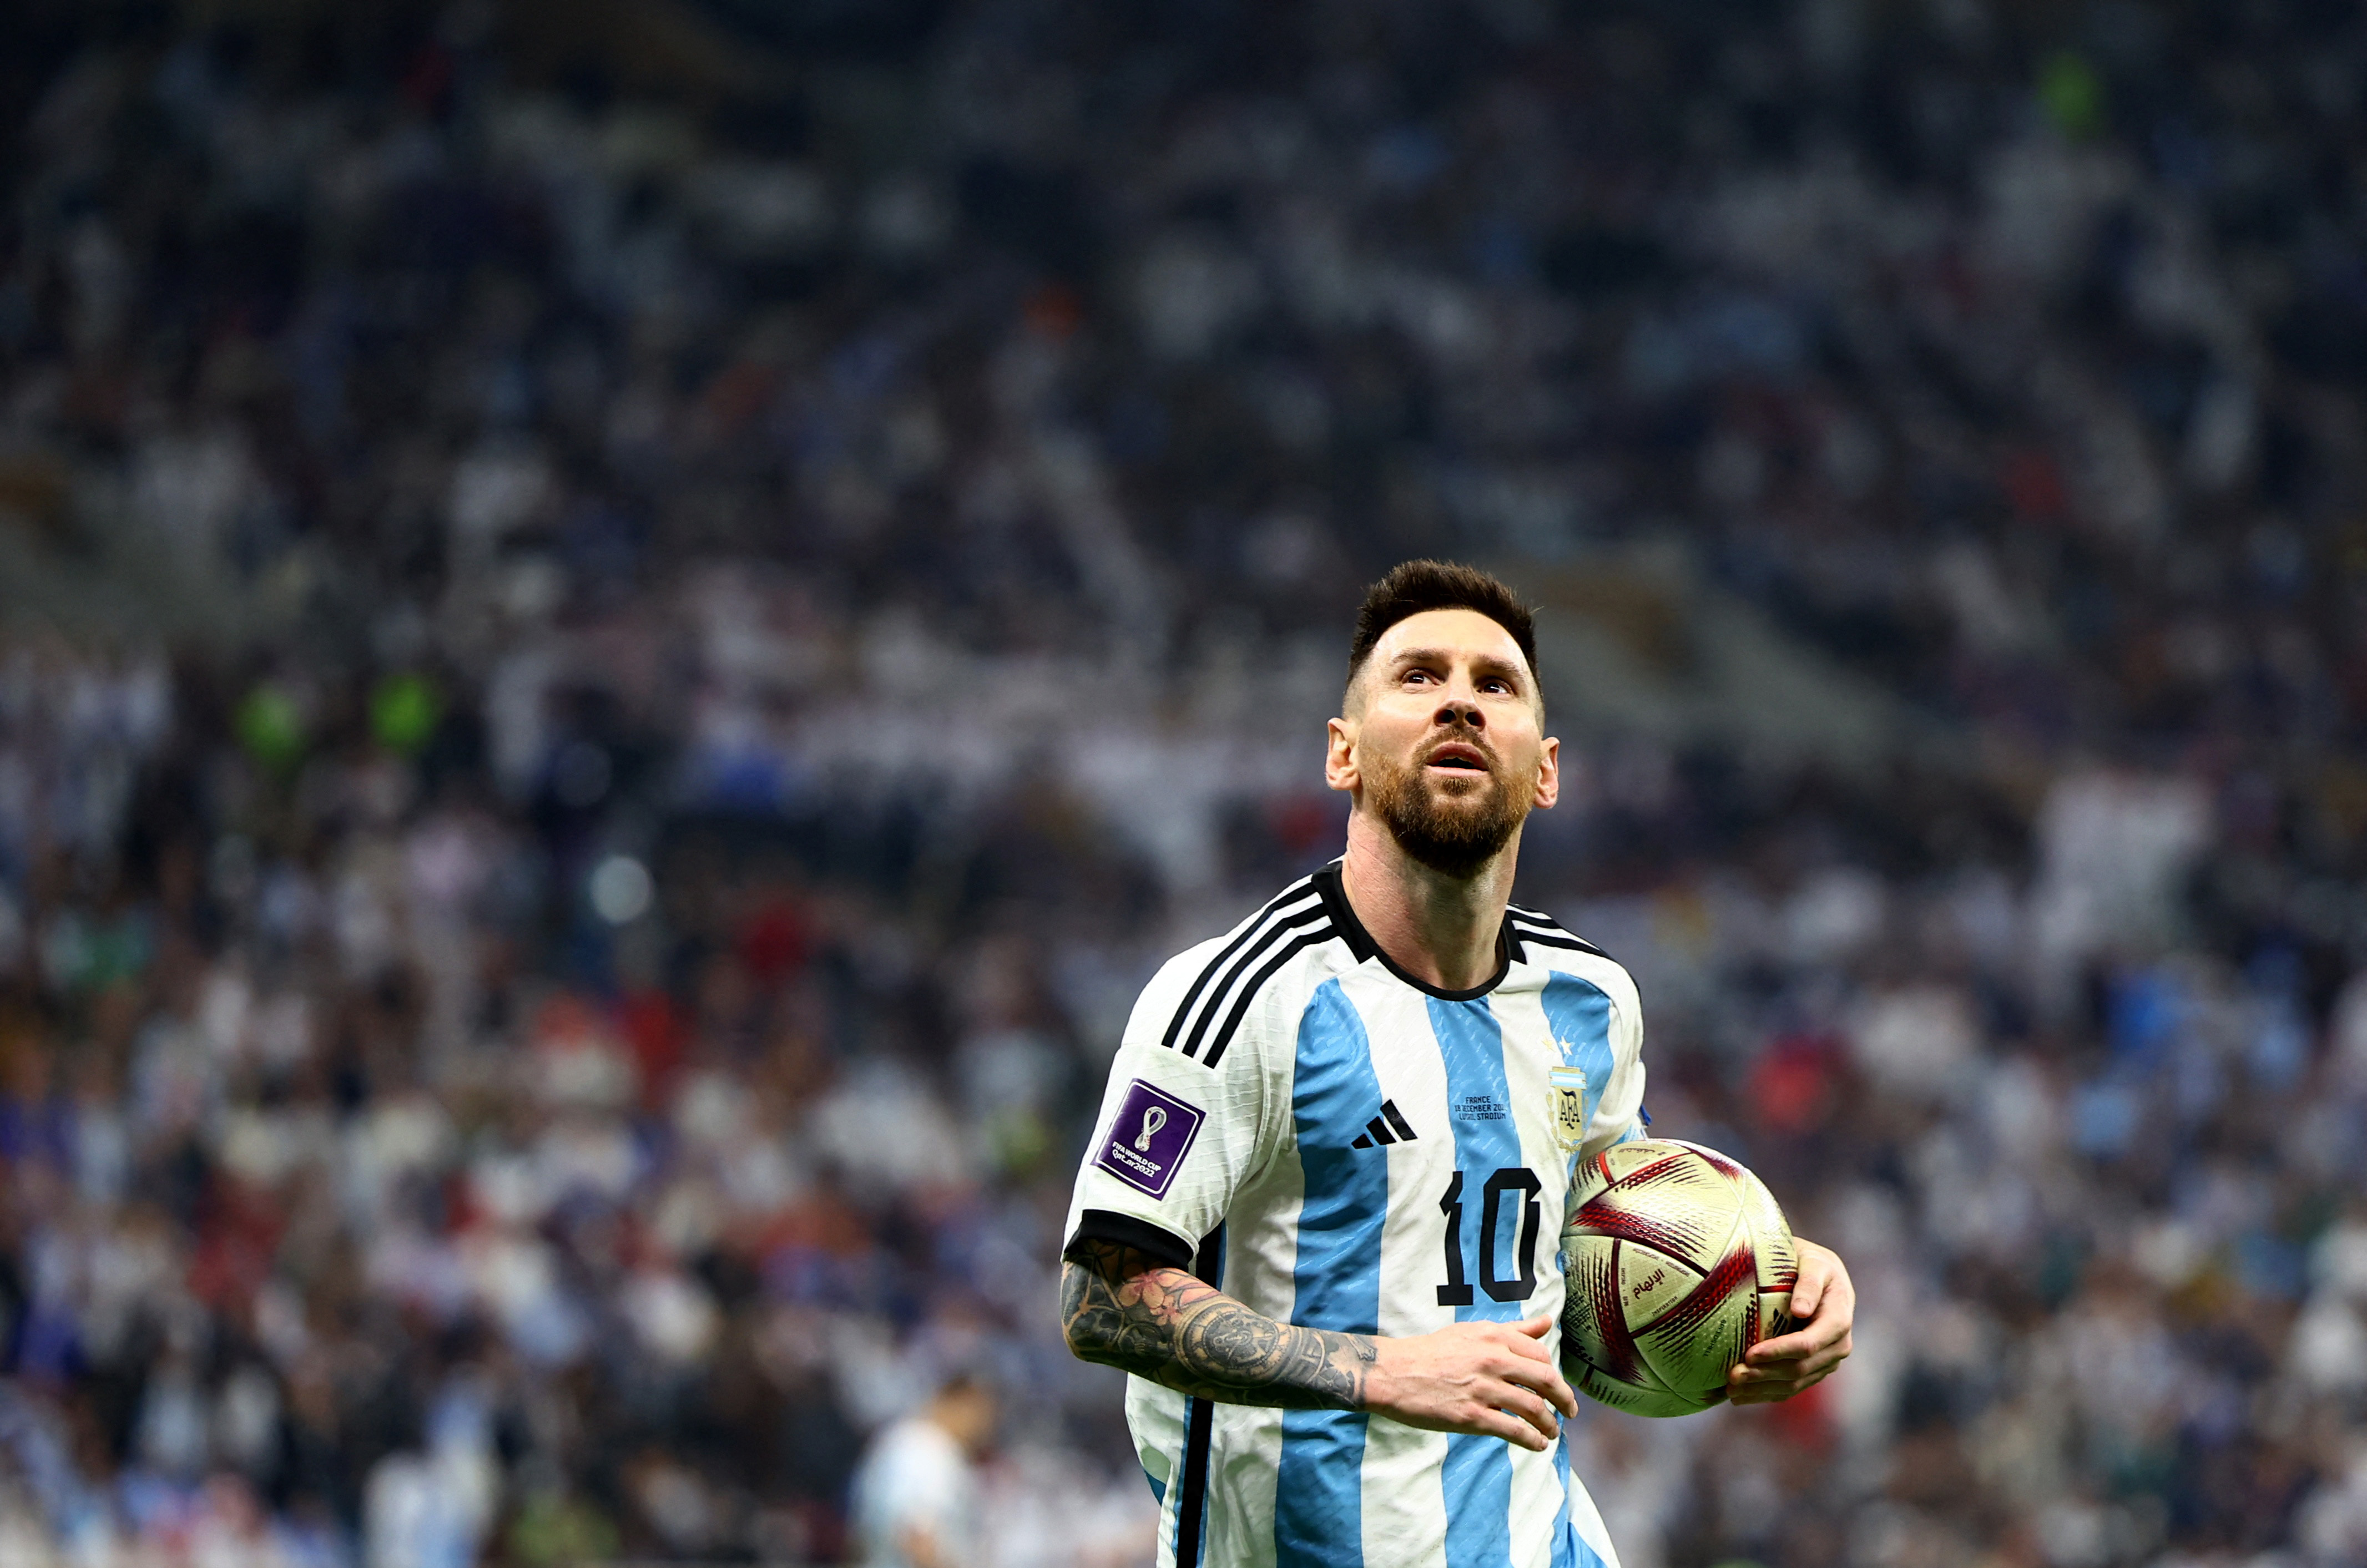 Todo el estadio Monumental espera ver a Lionel Messi levantando la Copa del Mundo (REUTERS/Kai Pfaffenbach)